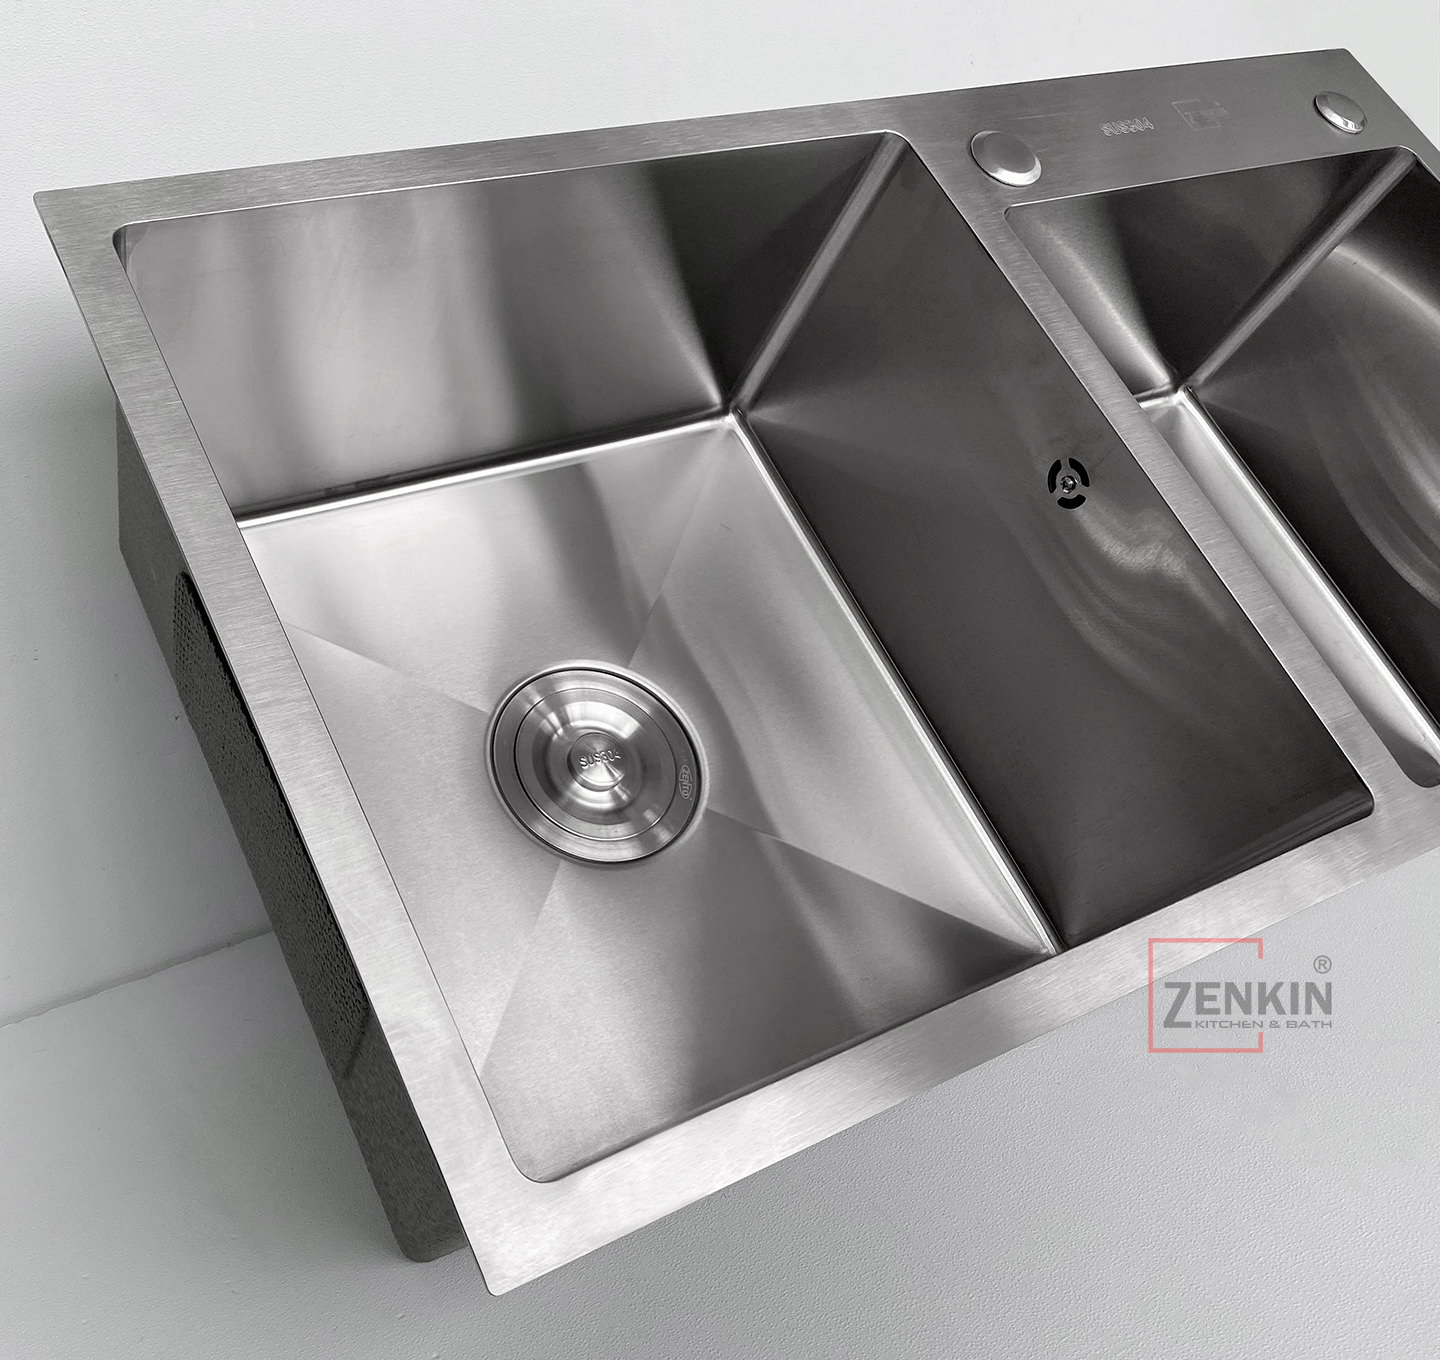 Zenkin Kitchen Sink Zk7843 304